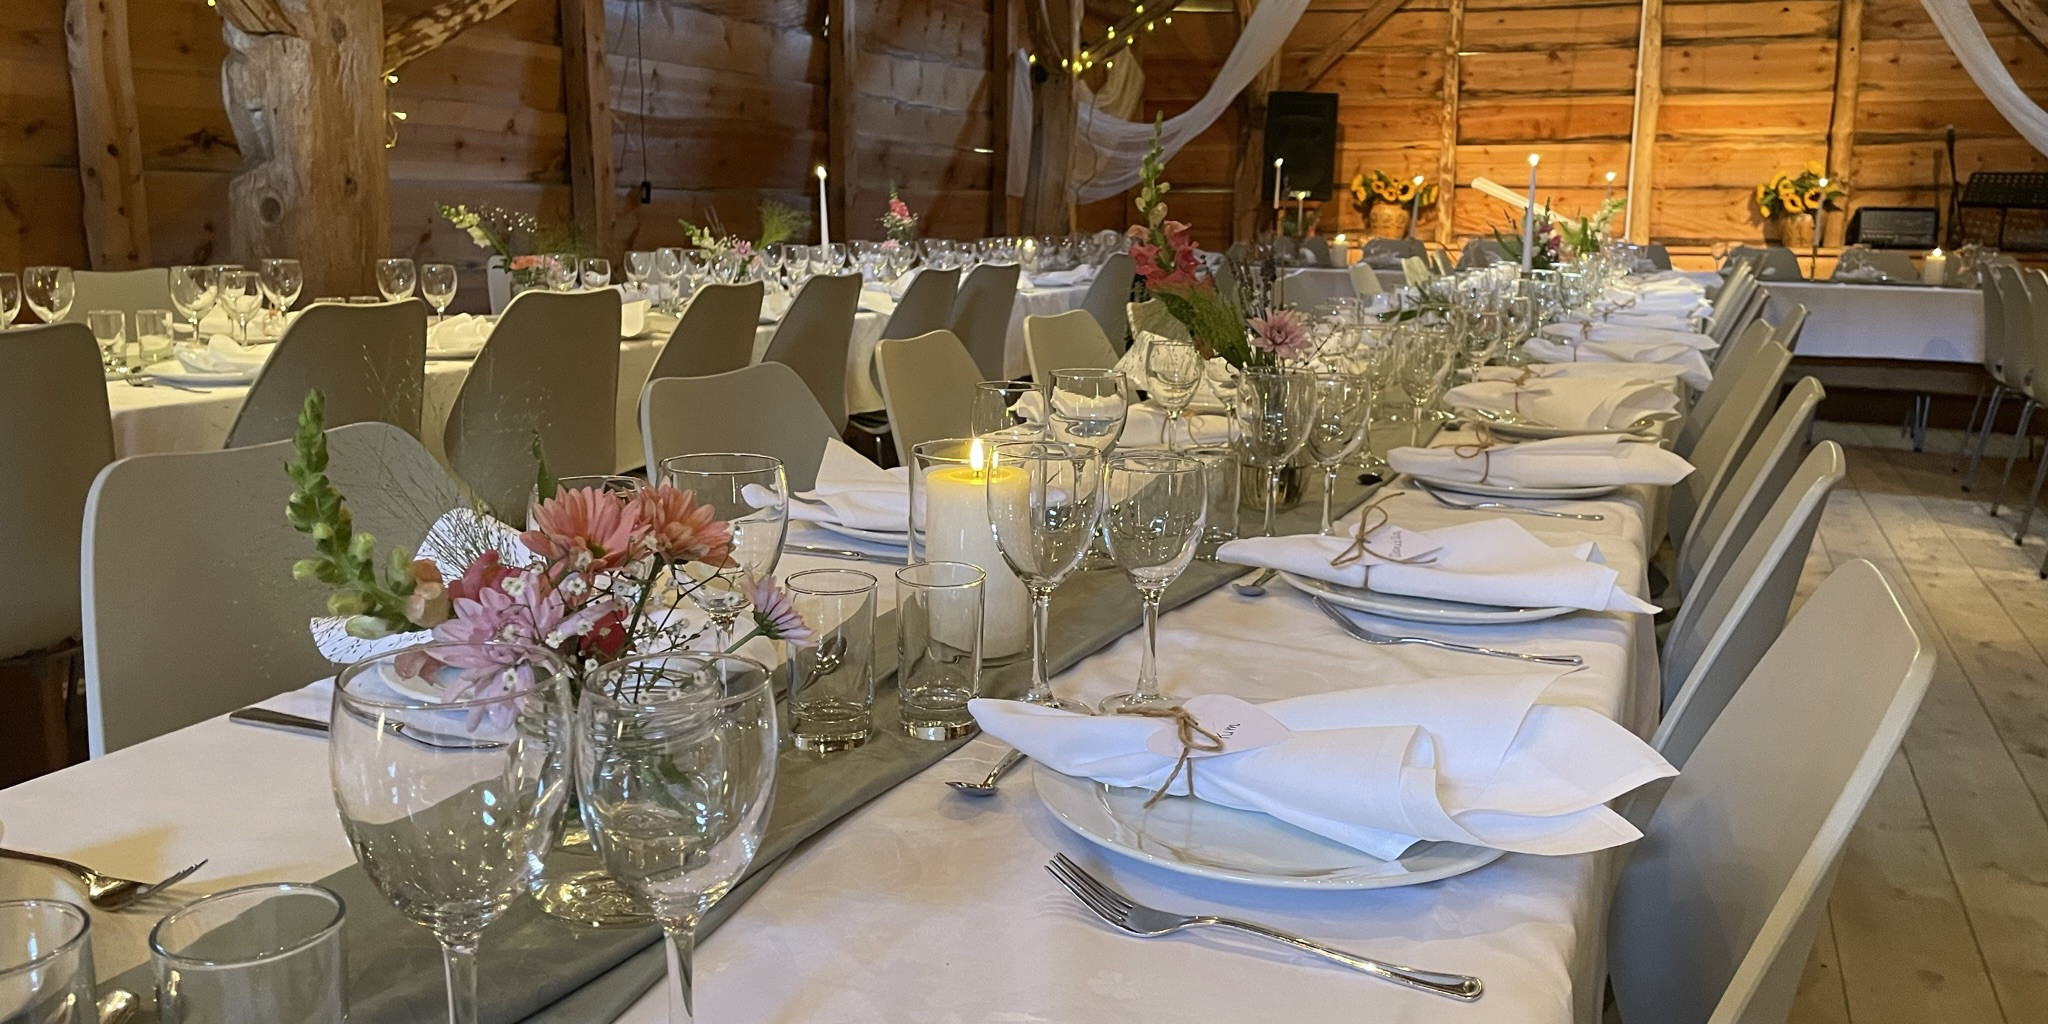 Utsnitt av odekorerte langbord til bryllaup. Borda er pynta med kvite dukar, stearinlys, serviettar med namnelappar og blomar. I bakgrunnen kvit tyll som er festa i tak og lys.